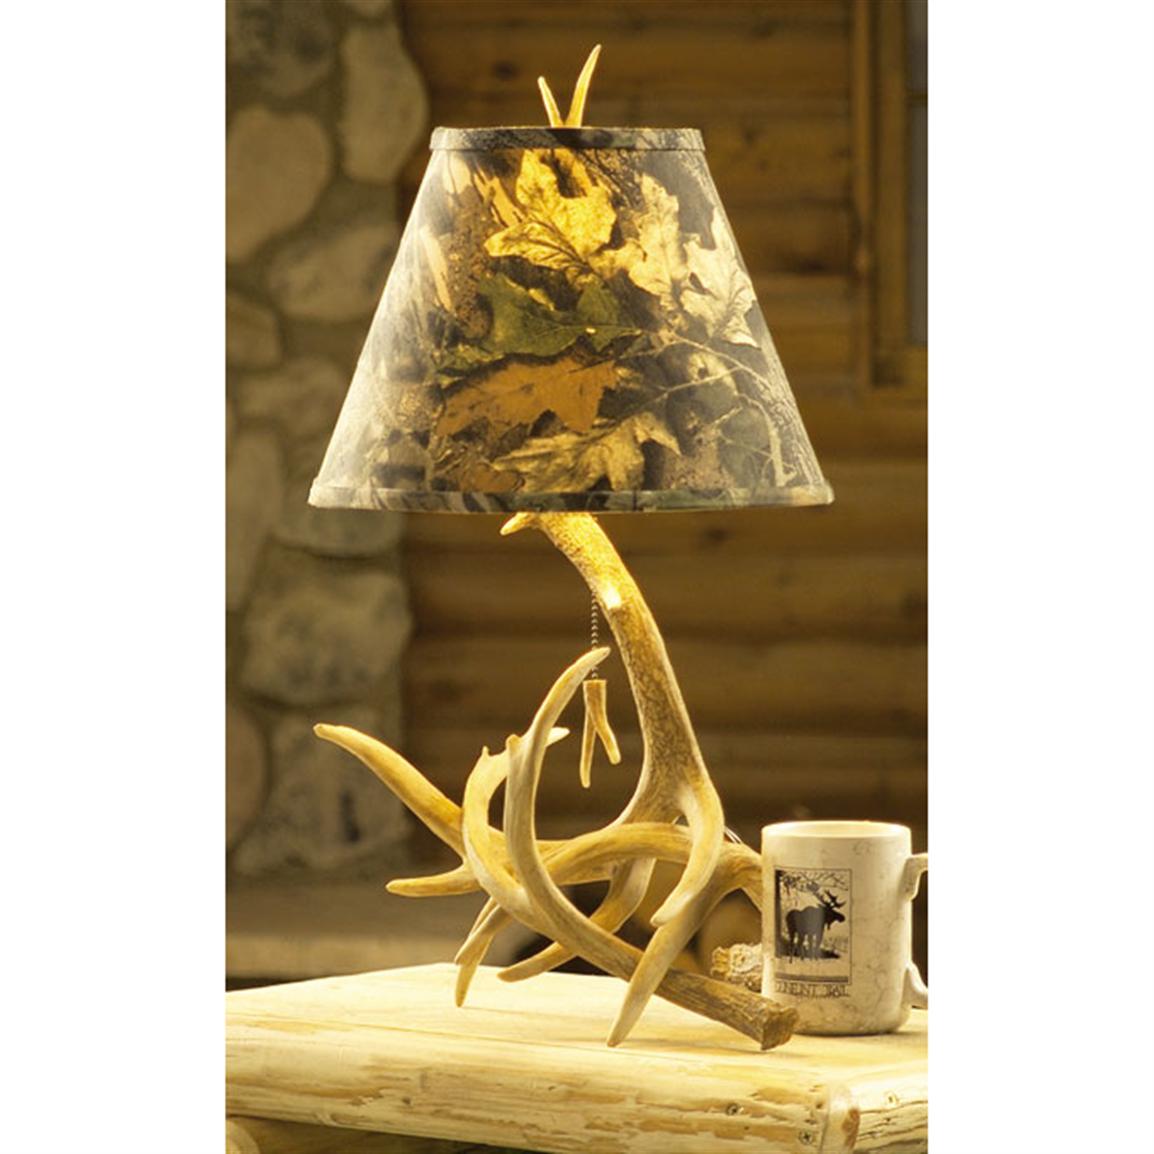 Mossy Oak Antler Table Lamp 75569, Mossy Oak Lamp Shade